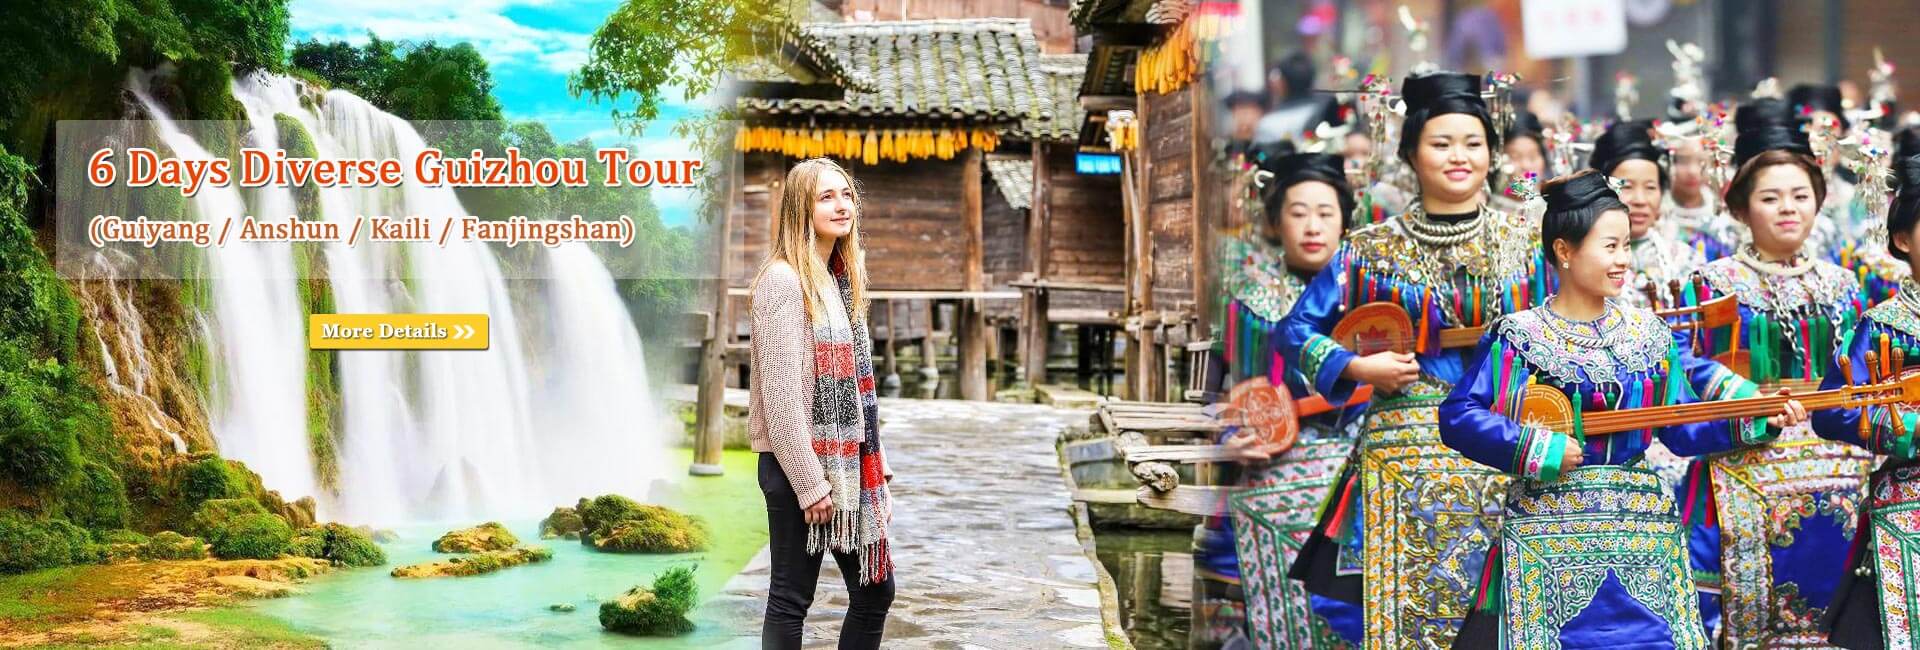 Guizhou Tours 